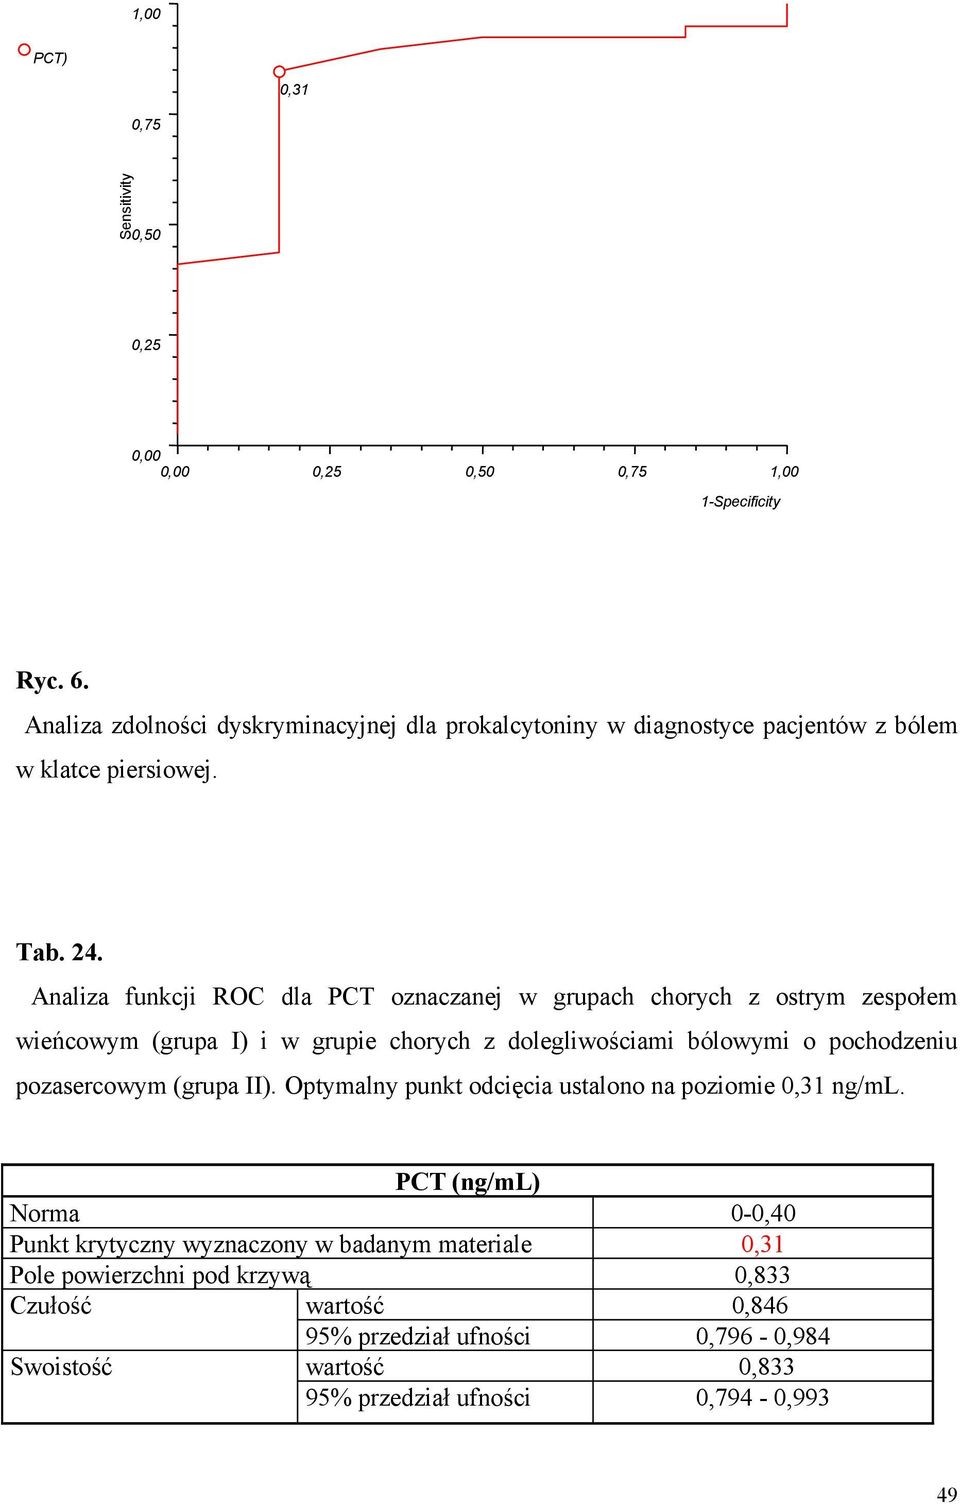 Analiza funkcji ROC dla PCT oznaczanej w grupach chorych z ostrym zespołem wieńcowym (grupa I) i w grupie chorych z dolegliwościami bólowymi o pochodzeniu pozasercowym